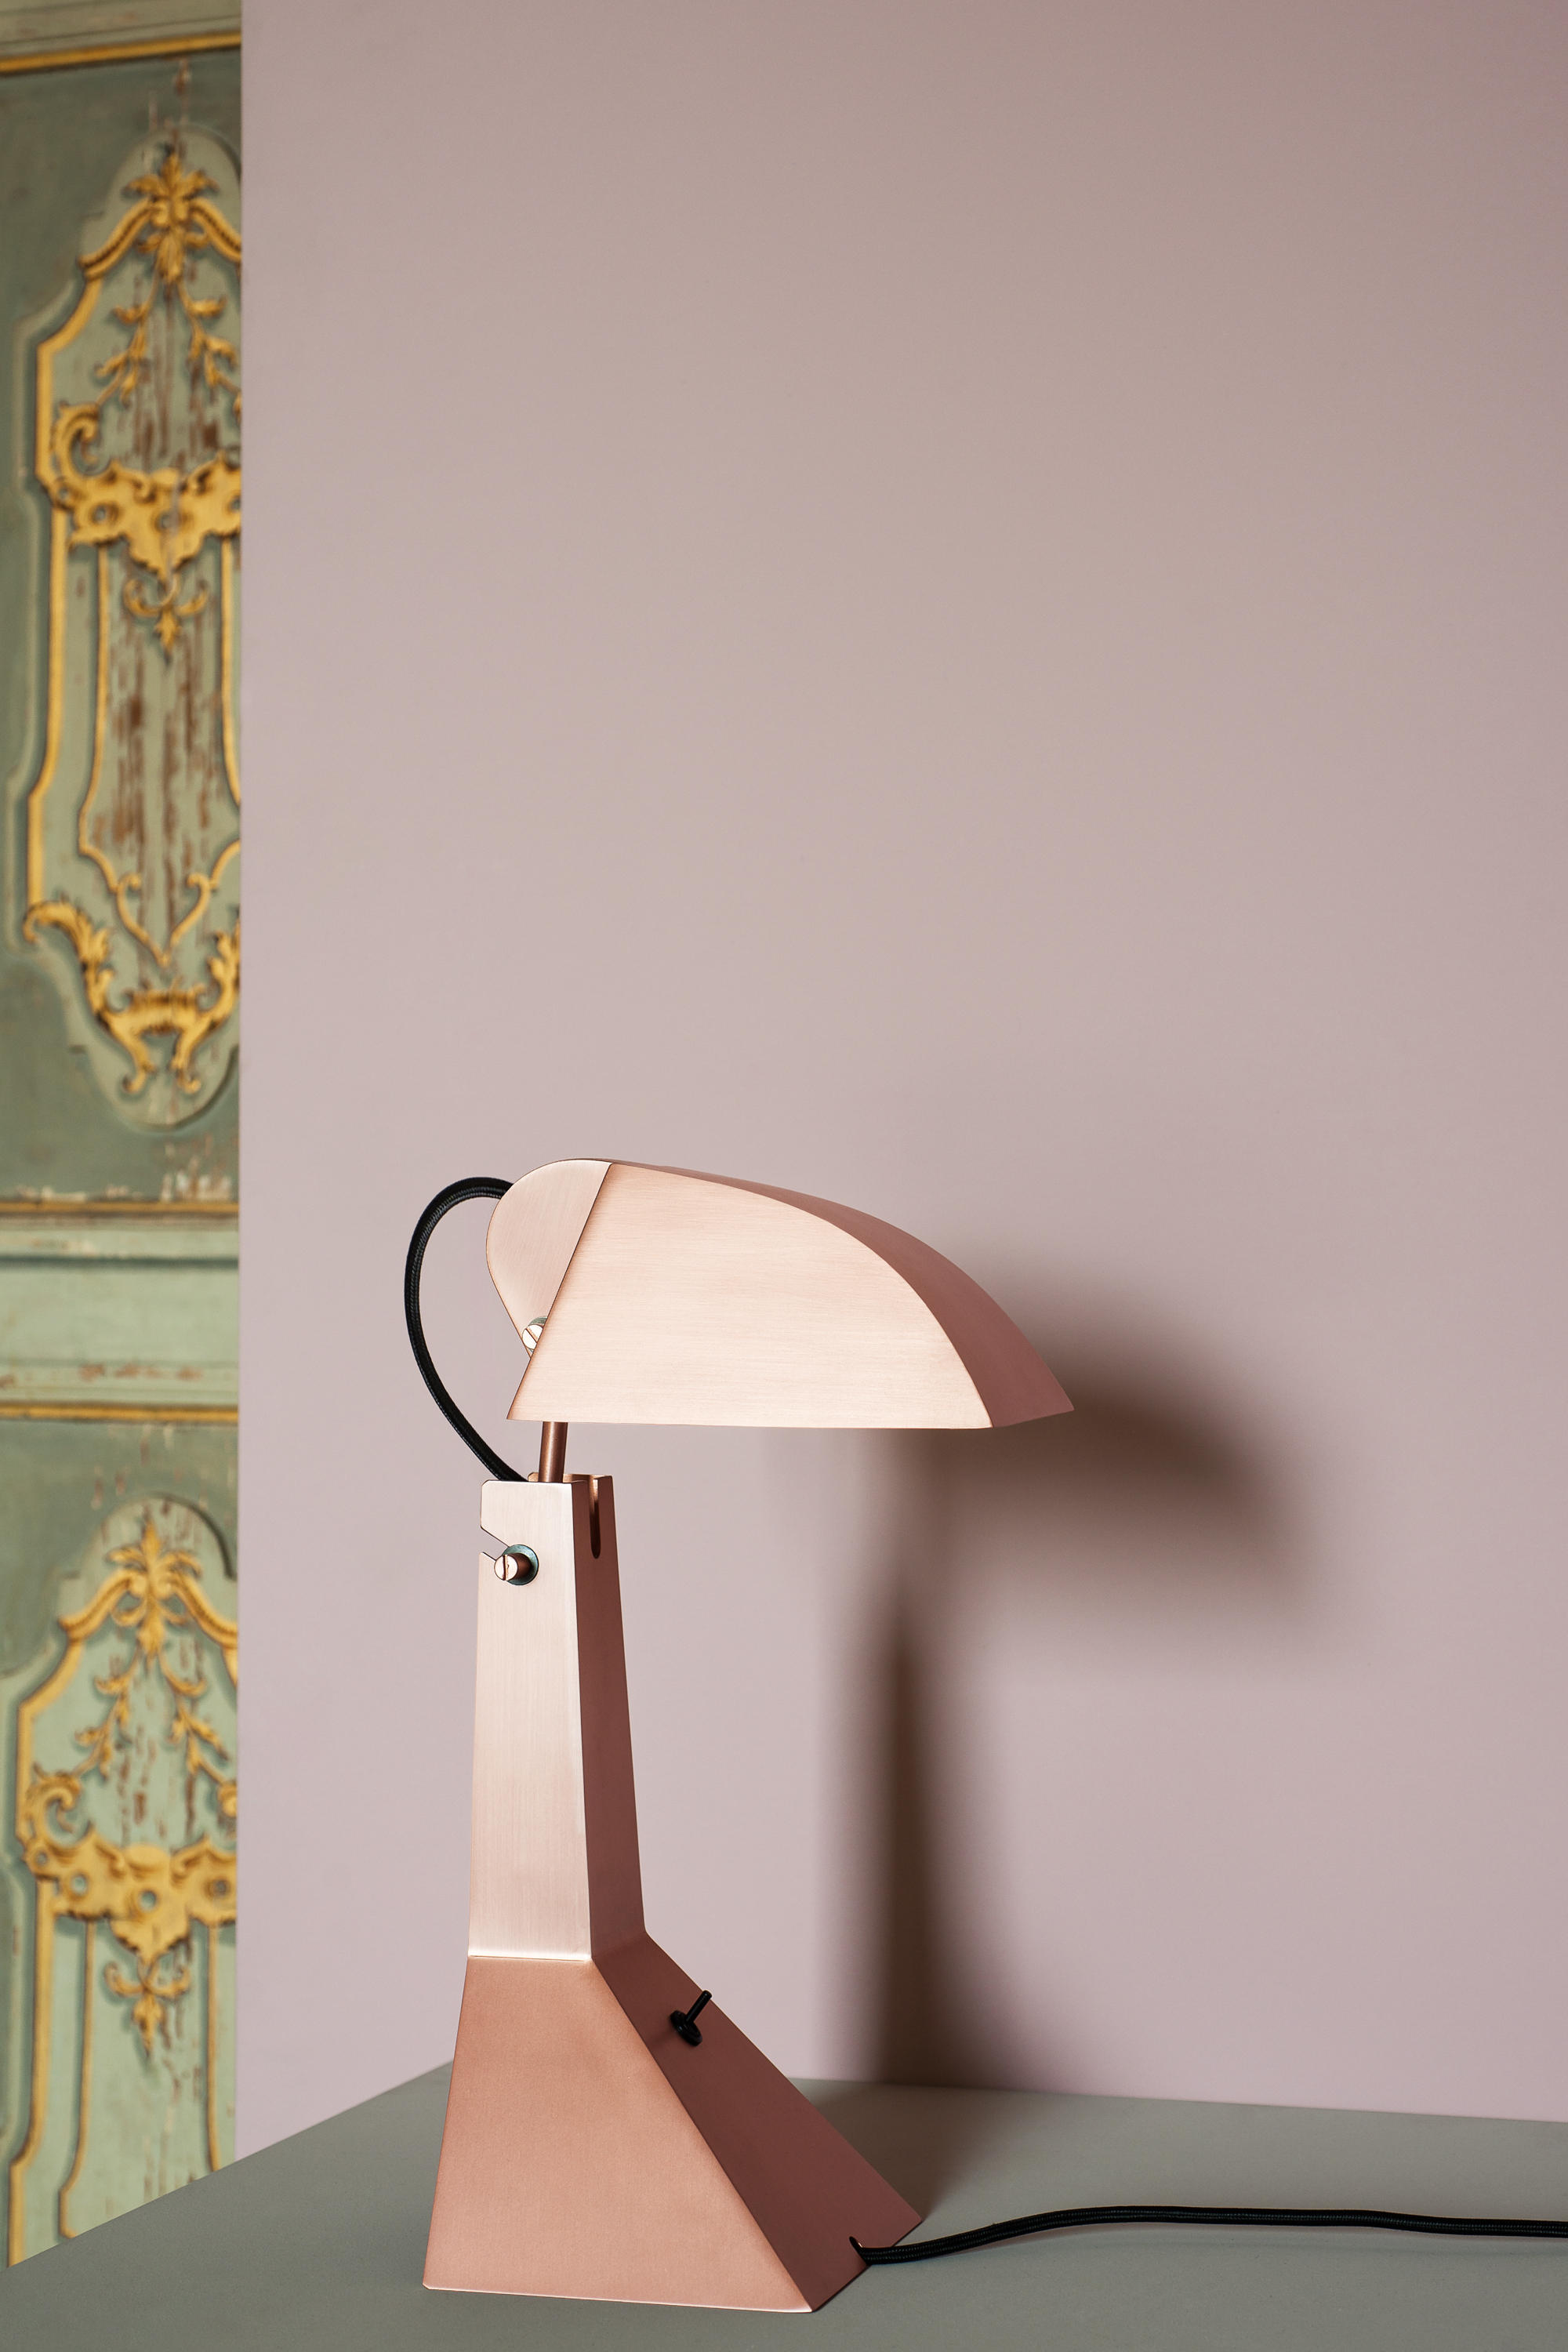 E63 Table Lamp by Umberto Riva for Tacchini Italia